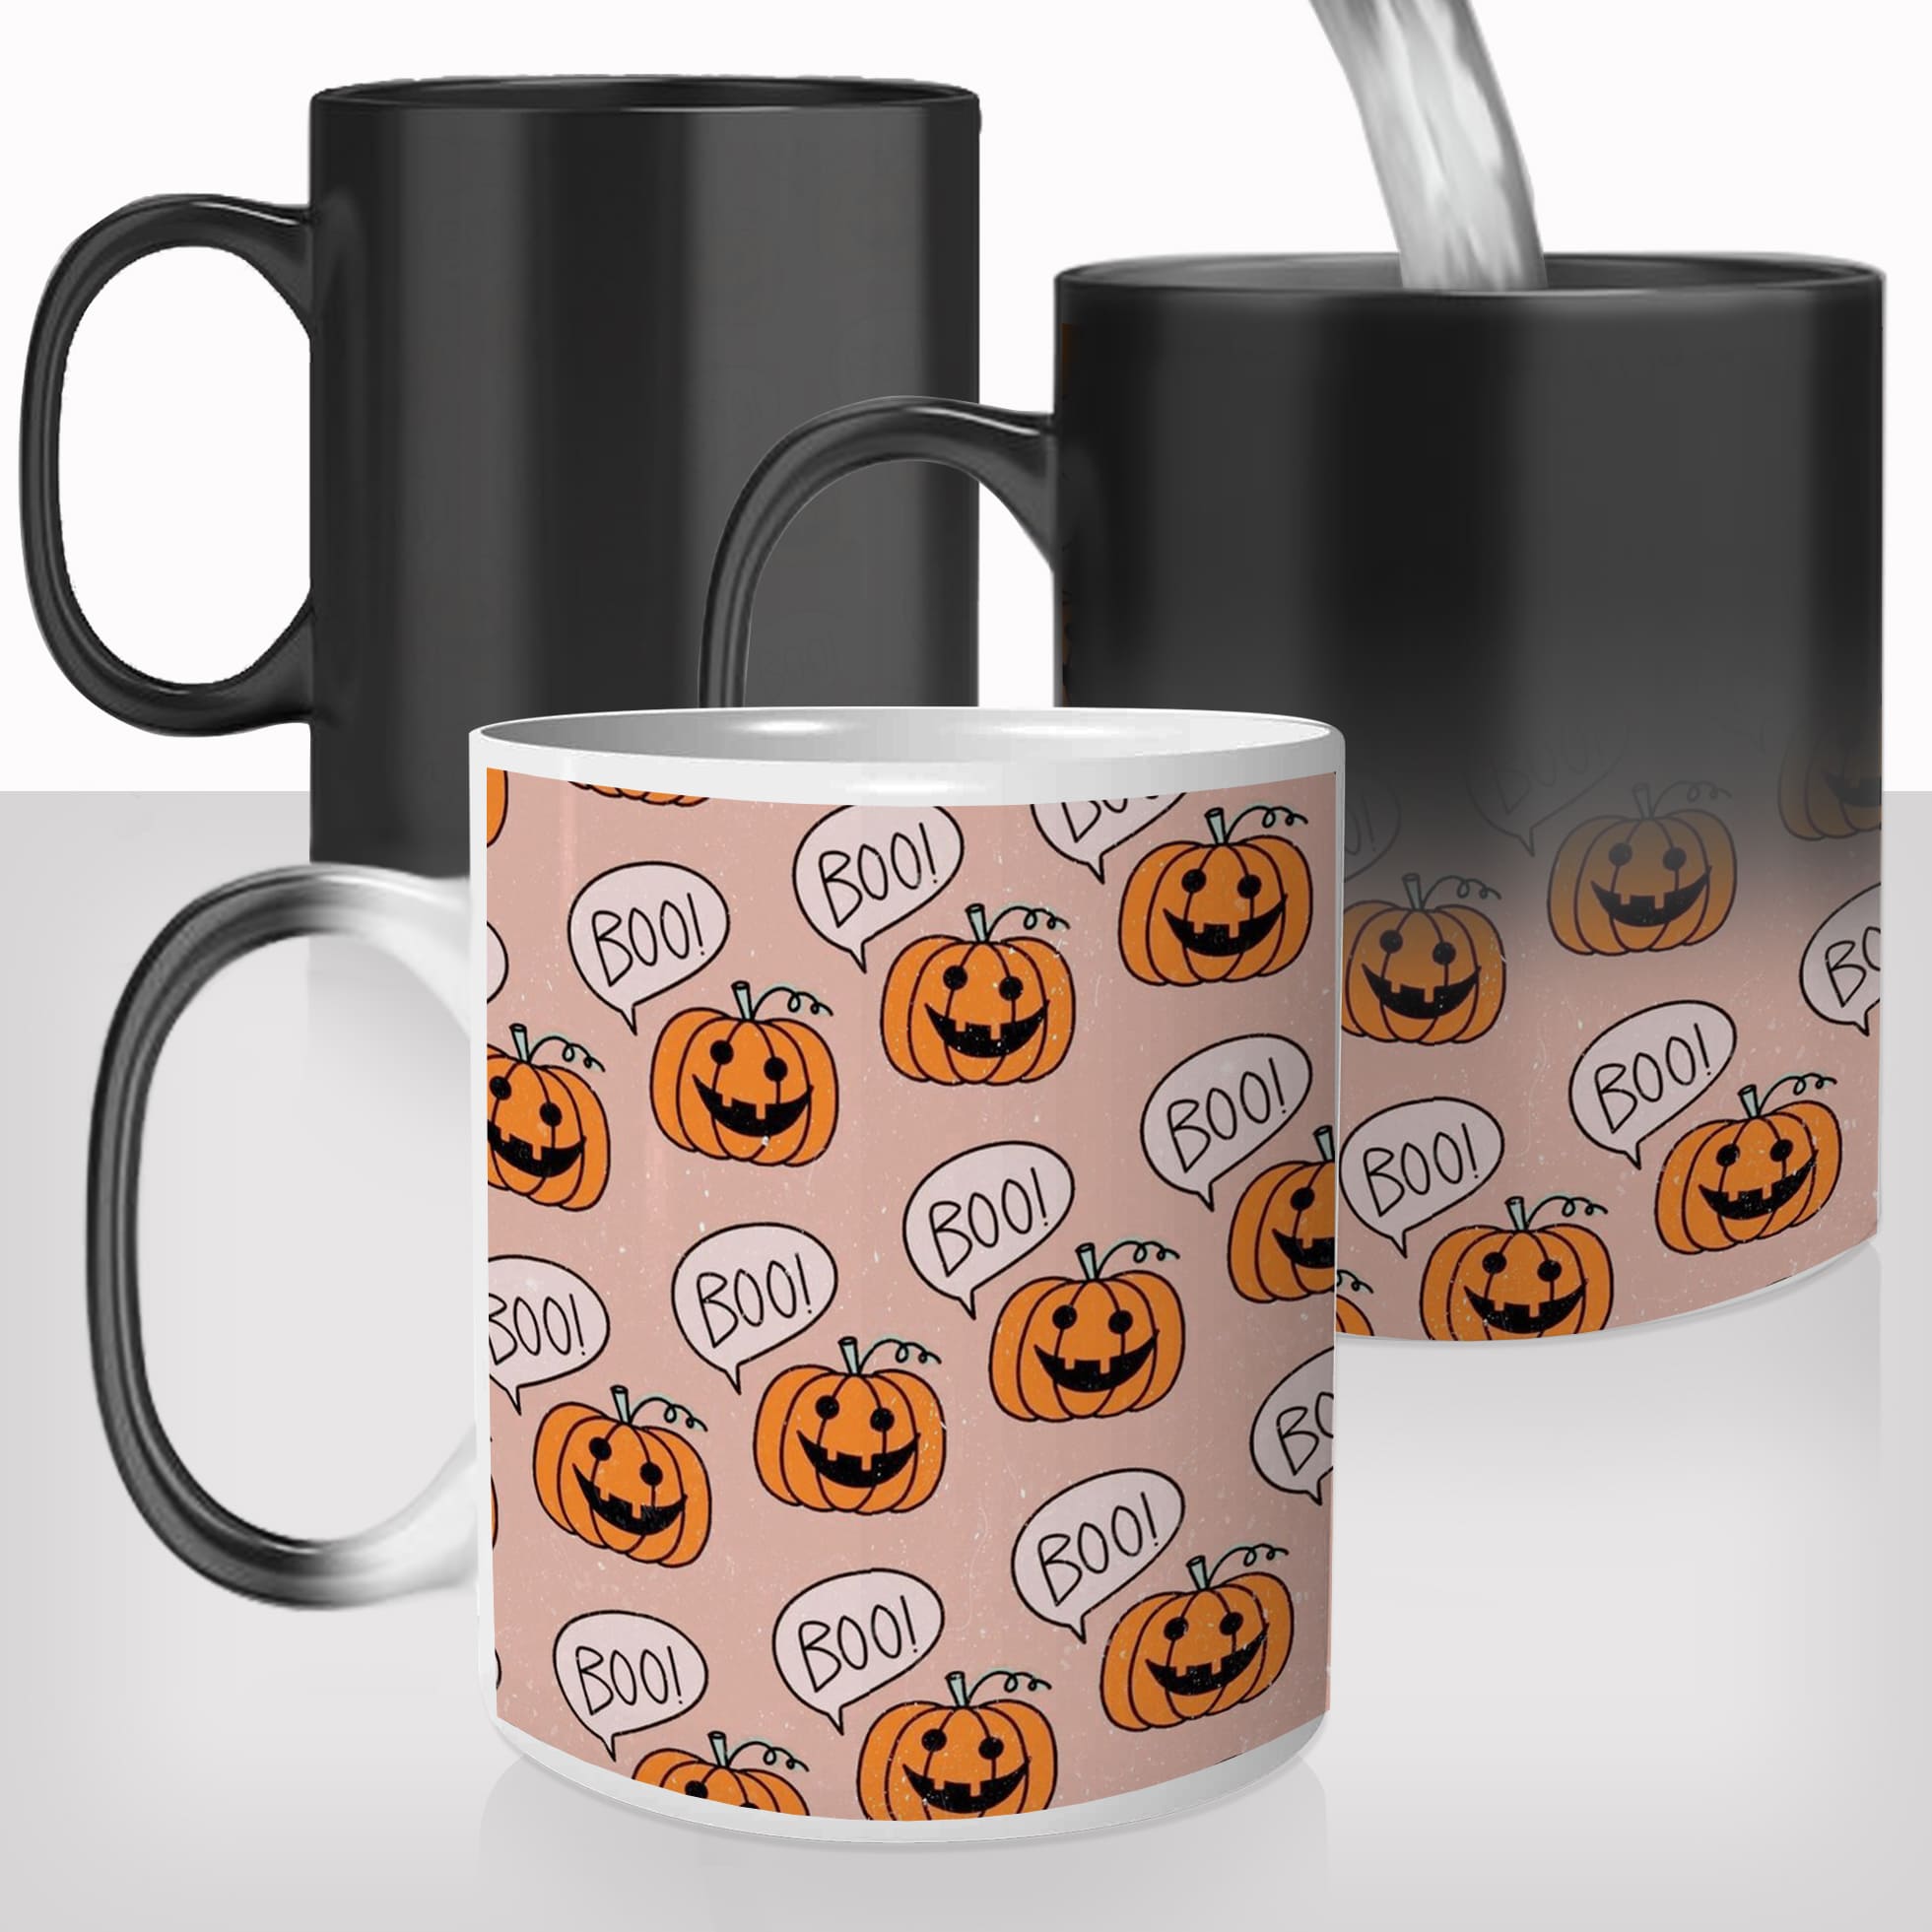 mug-magique-personnalisable-thermoreactif-tasse-thermique-citrouille-boo-spooky-meilleur-déguisement-halloween-fun-idée-cadeau-original2